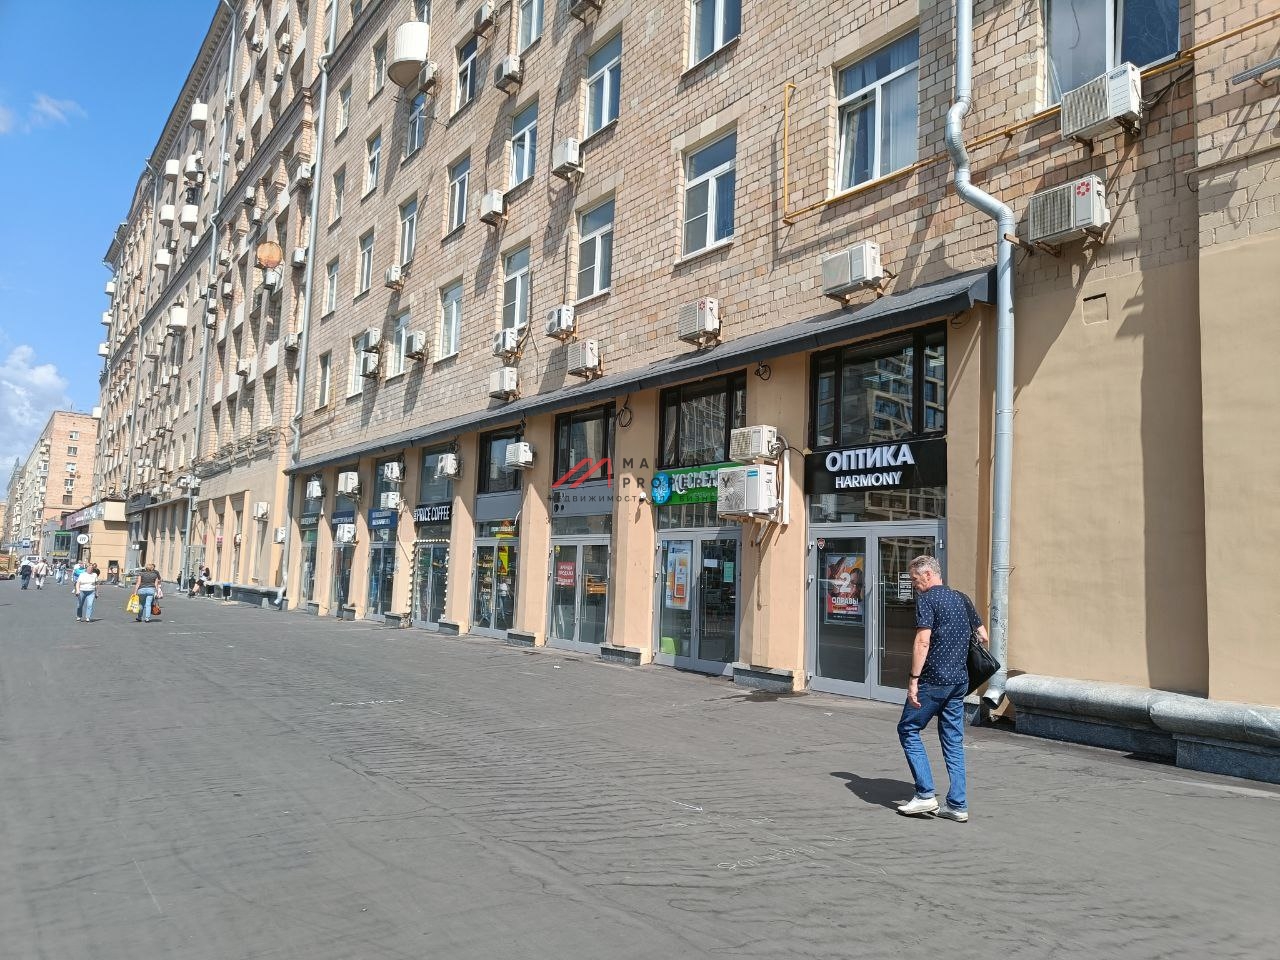 Продажа помещения возле метро Алексеевская